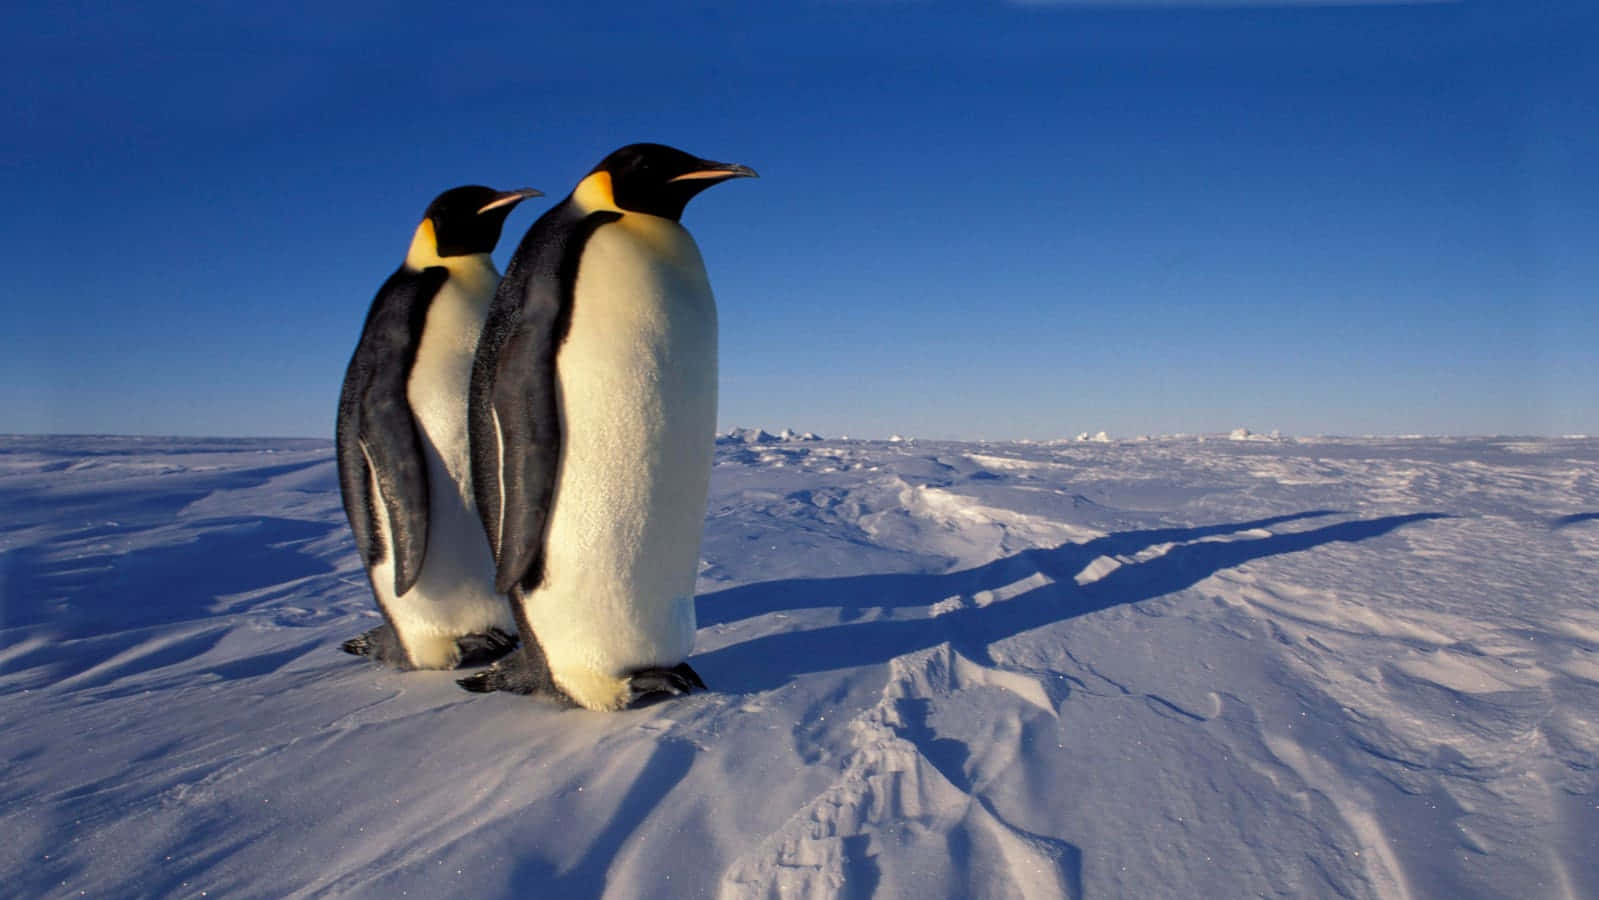 Emperor Penguins Antarctic Ice Scape Wallpaper